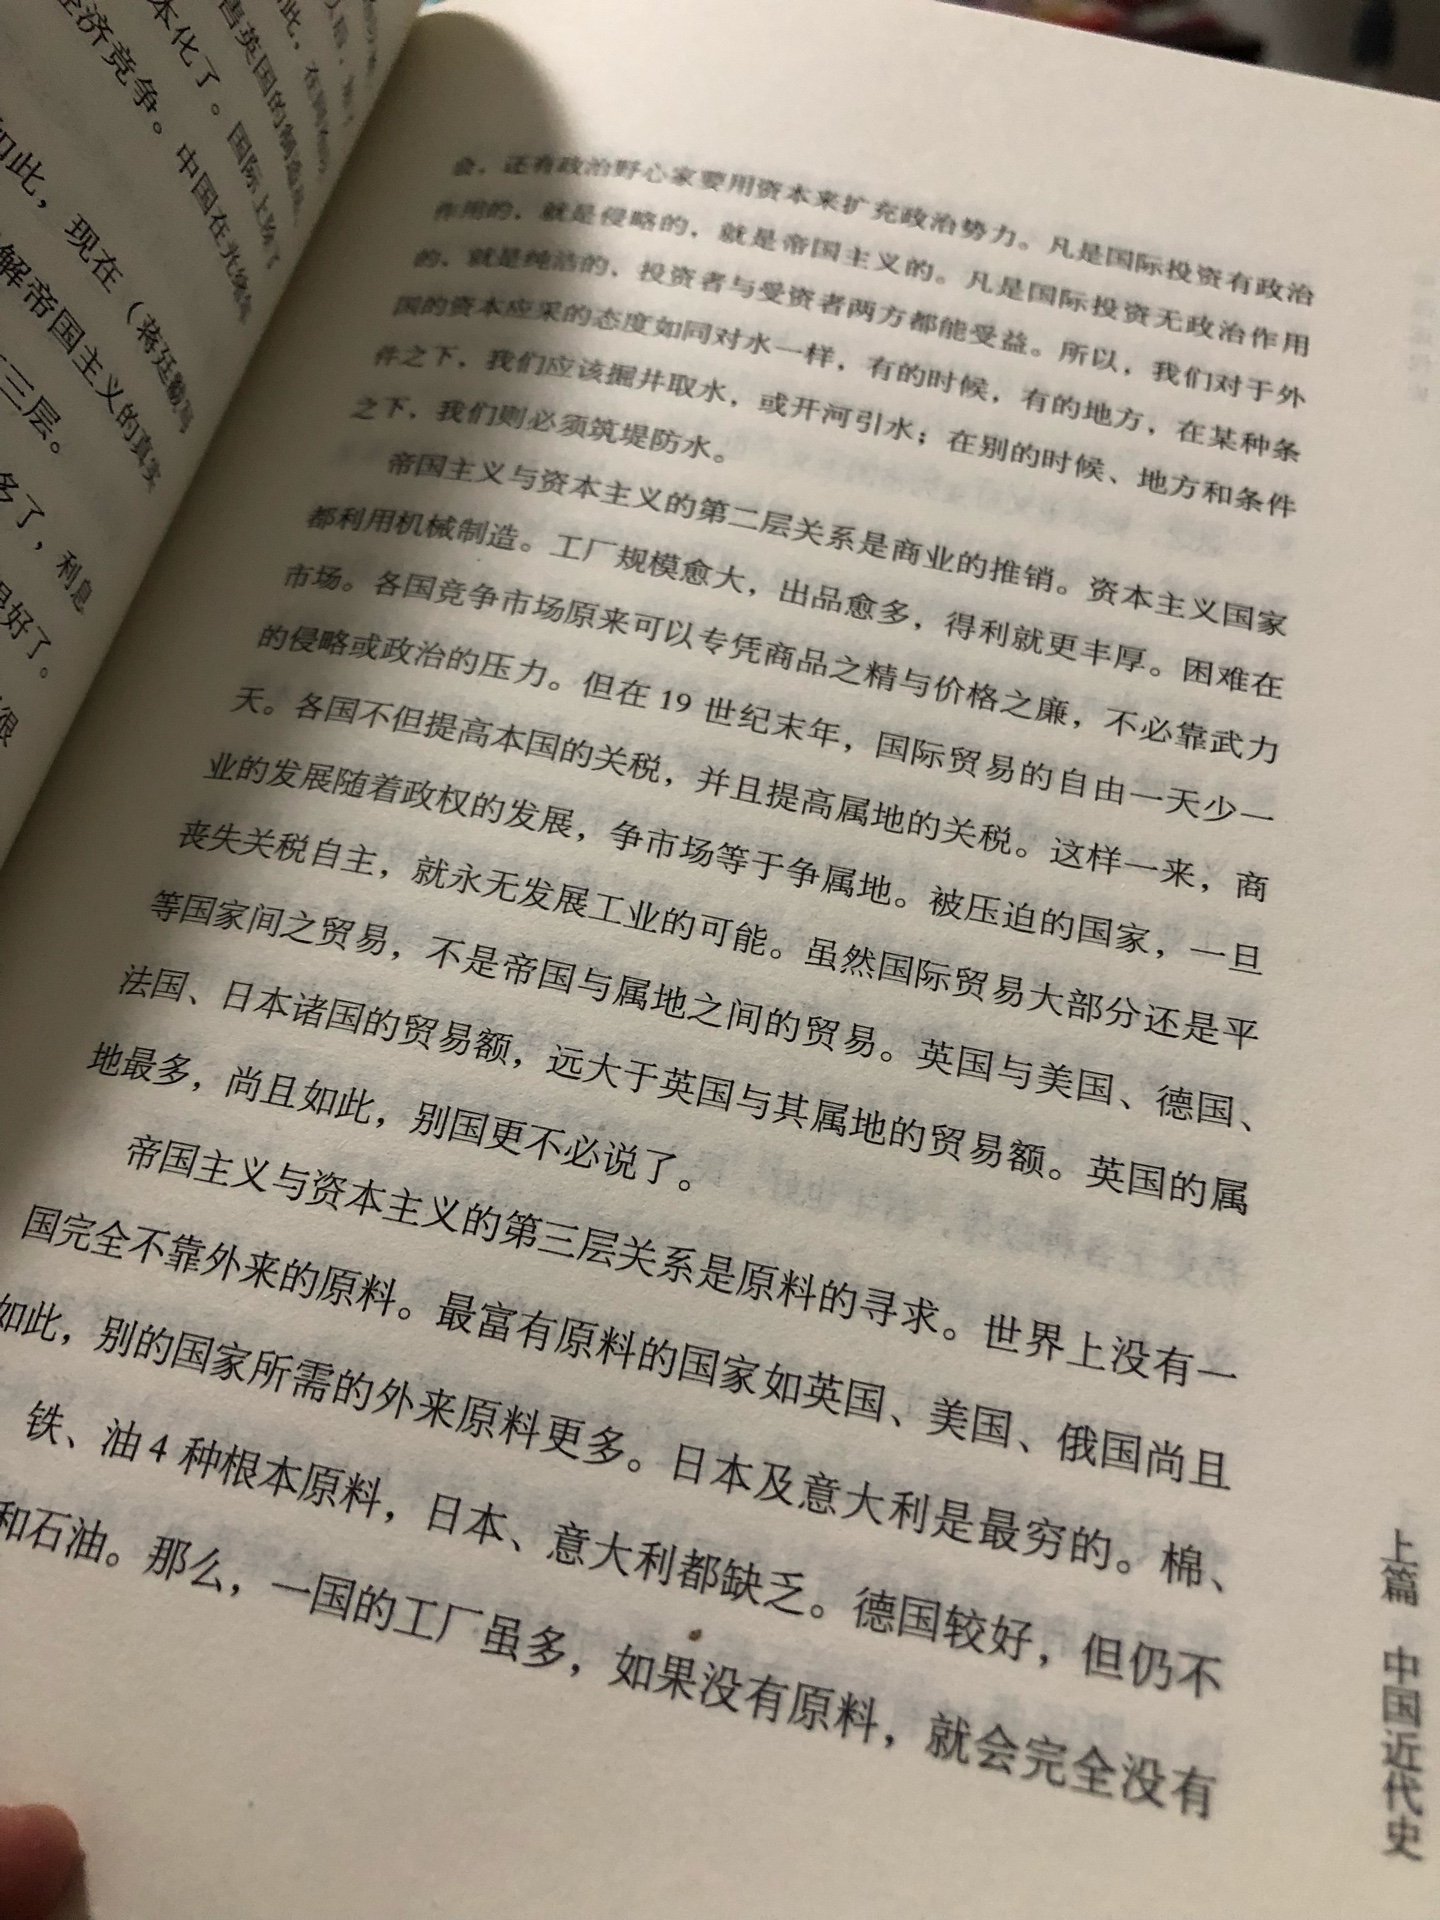 不推荐购买，蒋只写了大约这本书一半的厚度，其余均是摘录。而且蒋写的也很一般。